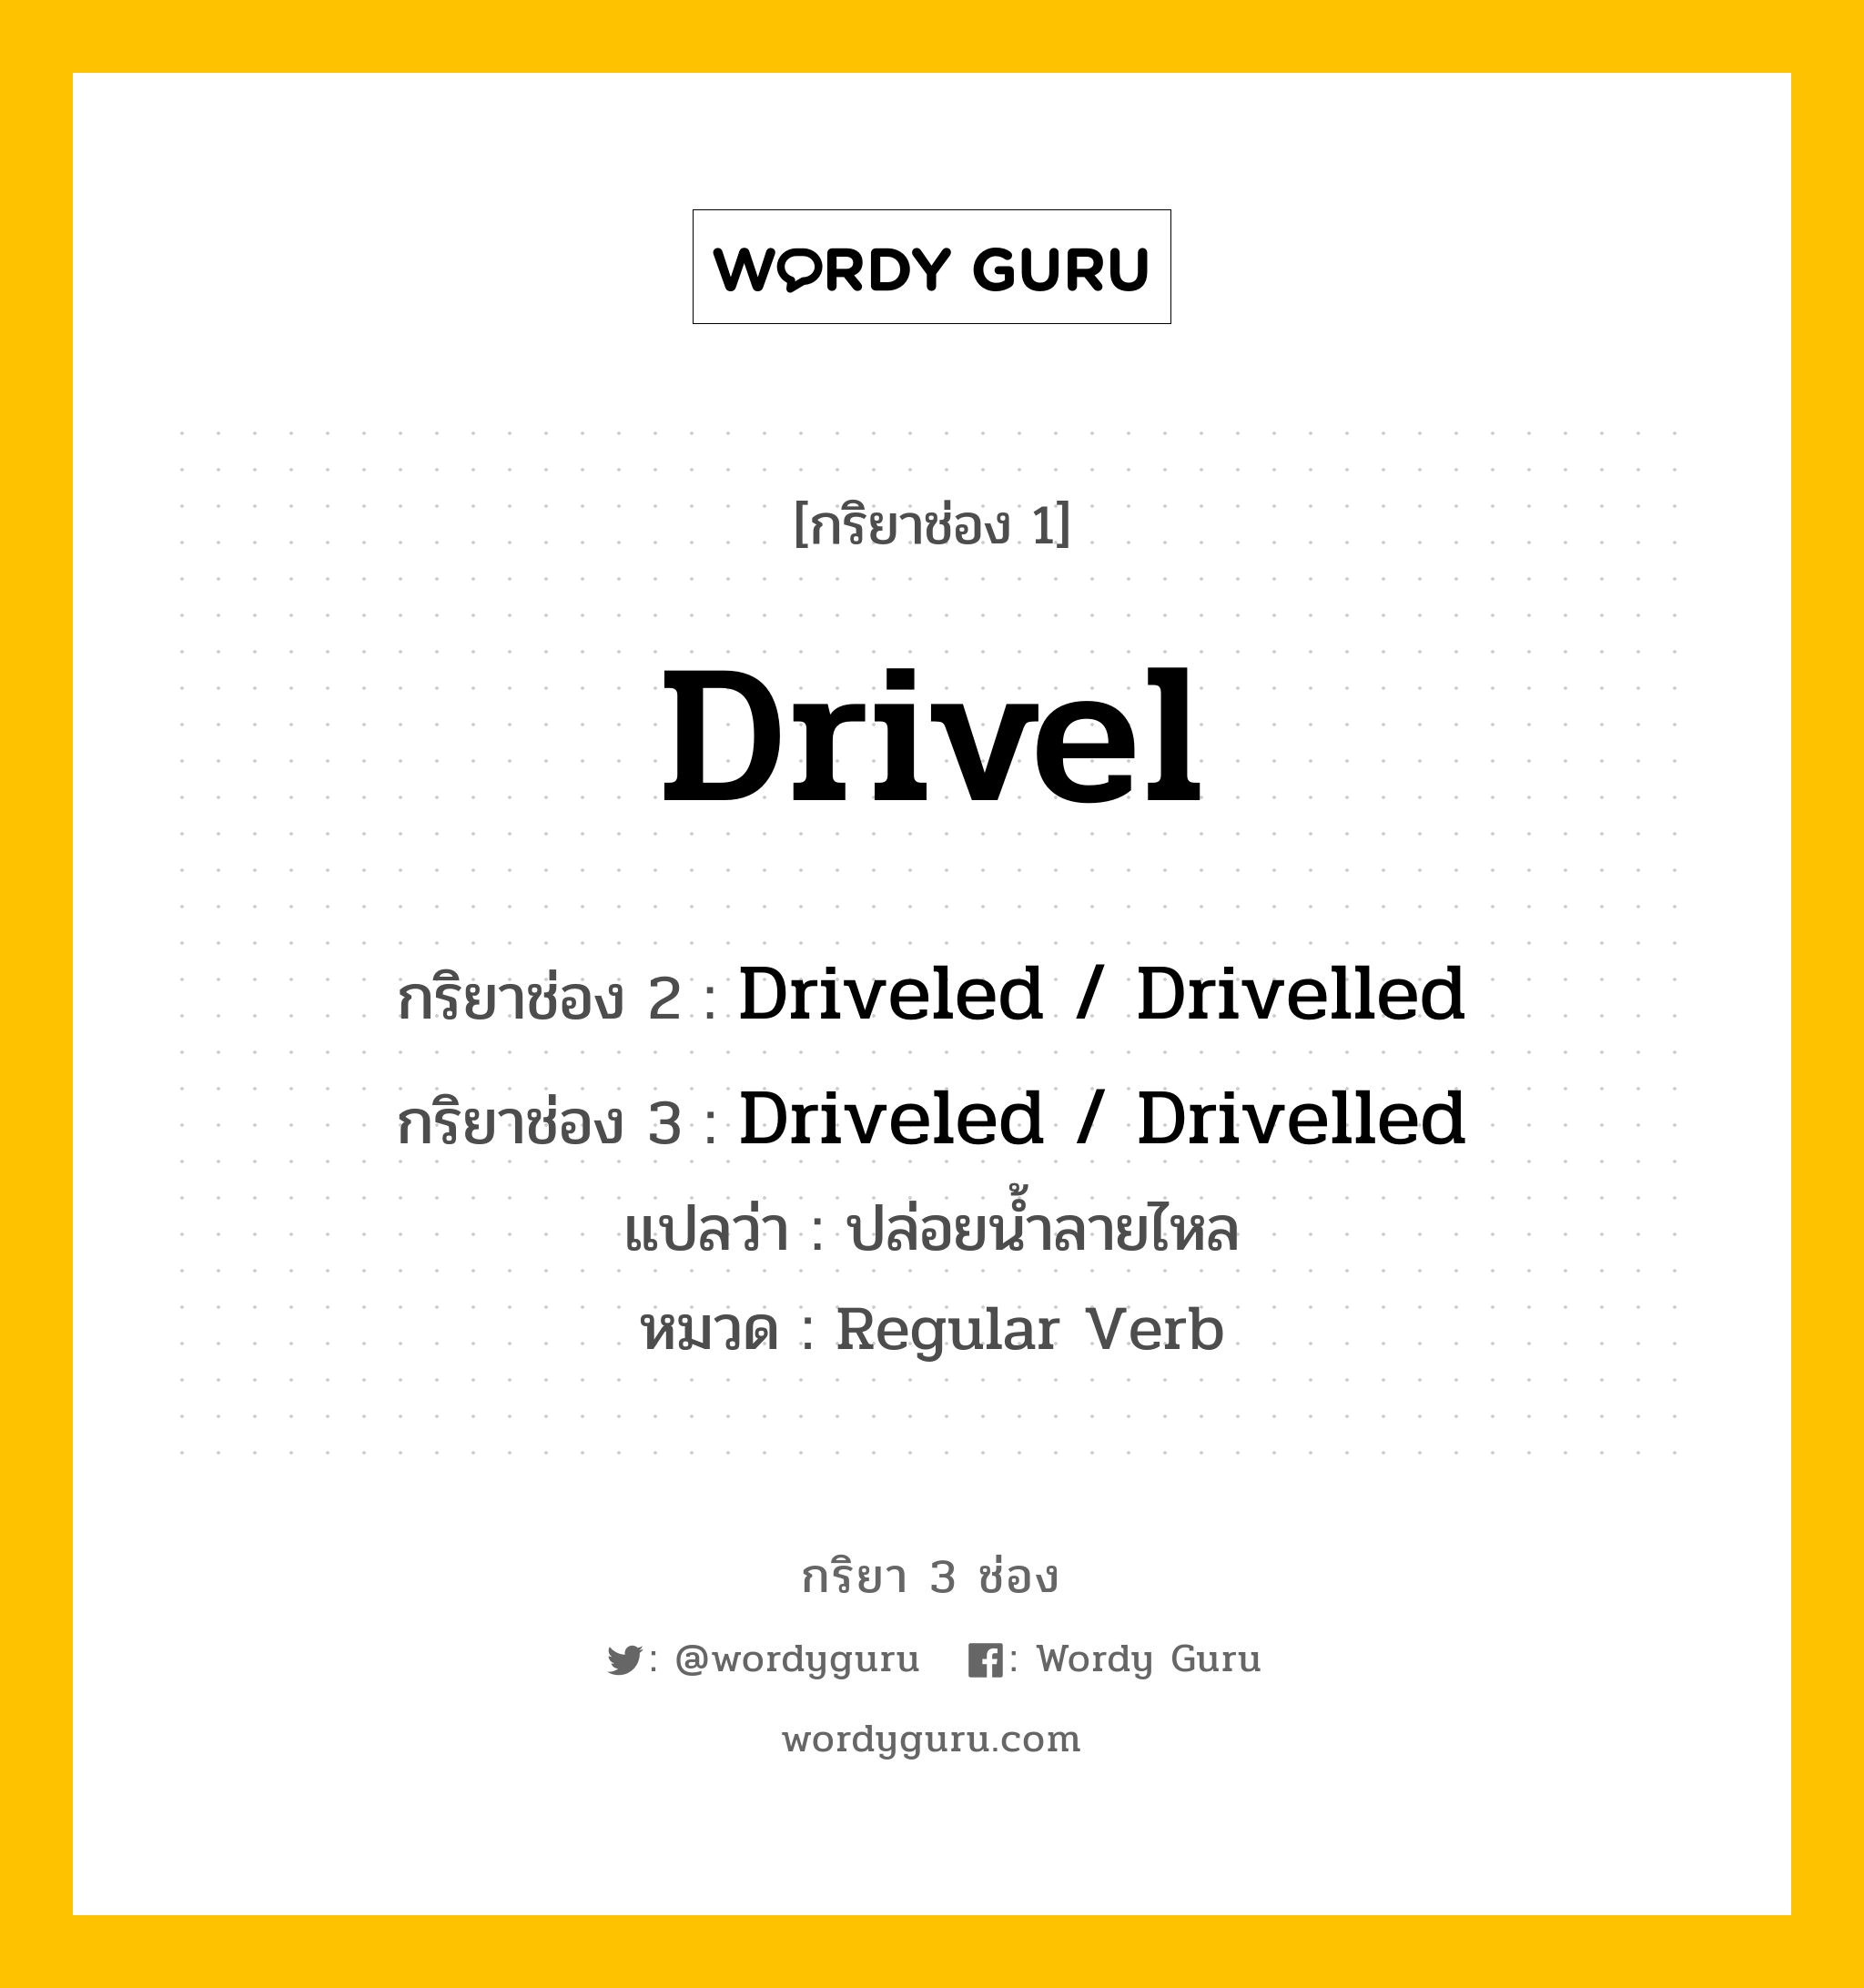 กริยา 3 ช่อง: Drivel ช่อง 2 Drivel ช่อง 3 คืออะไร, กริยาช่อง 1 Drivel กริยาช่อง 2 Driveled / Drivelled กริยาช่อง 3 Driveled / Drivelled แปลว่า ปล่อยน้ำลายไหล หมวด Regular Verb หมวด Regular Verb